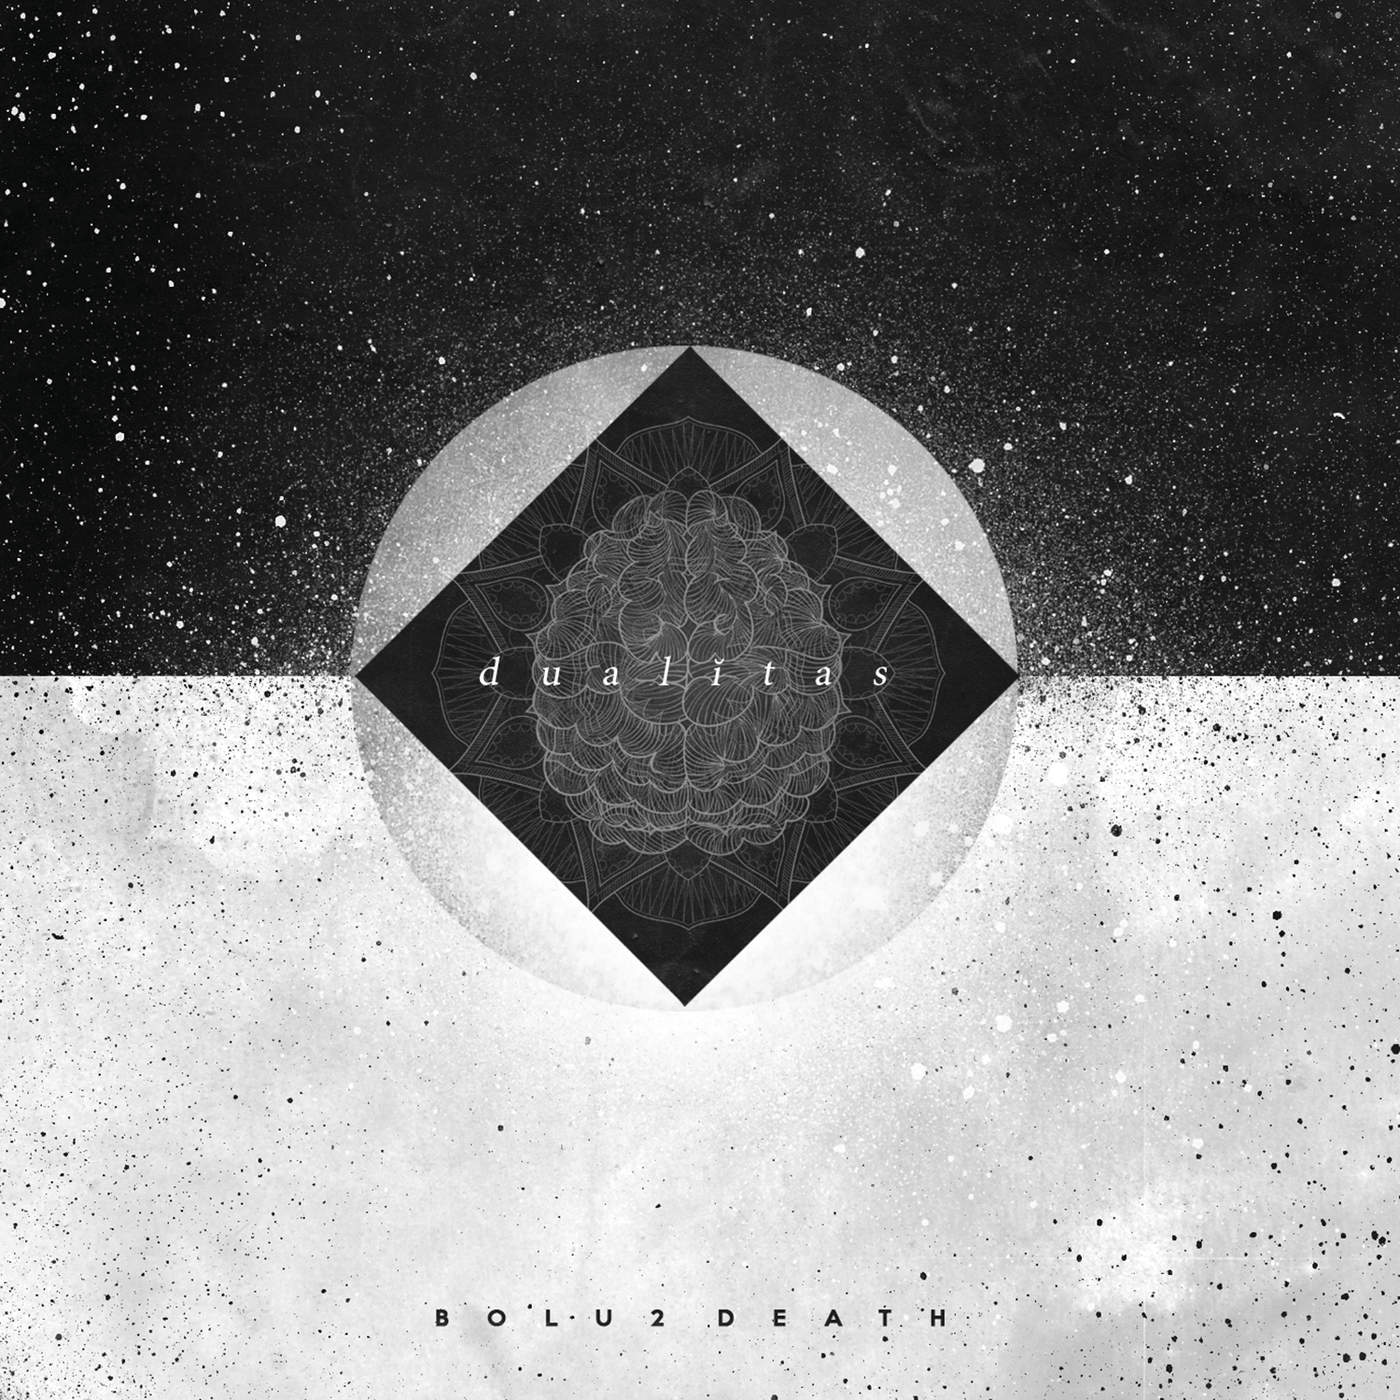 Bolu2 Death - Dualitas (2016) Album Info